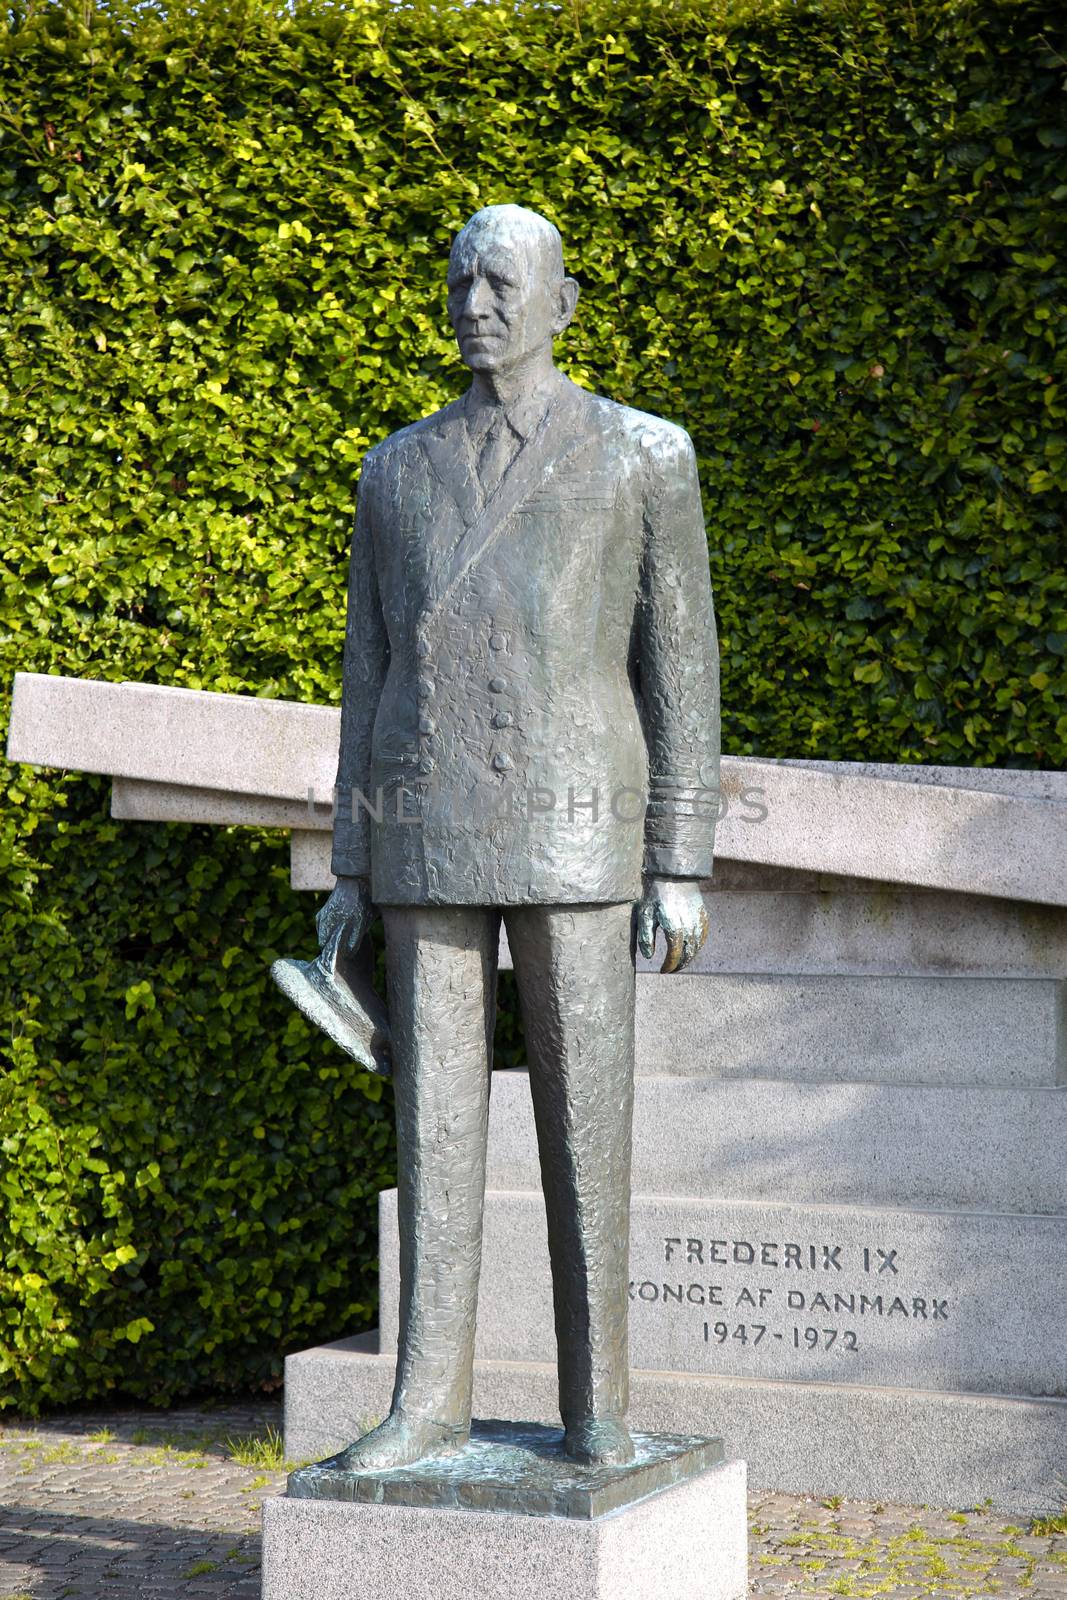 Statue of Frederick IX, King of Denmark in Copenhagen, Denmark